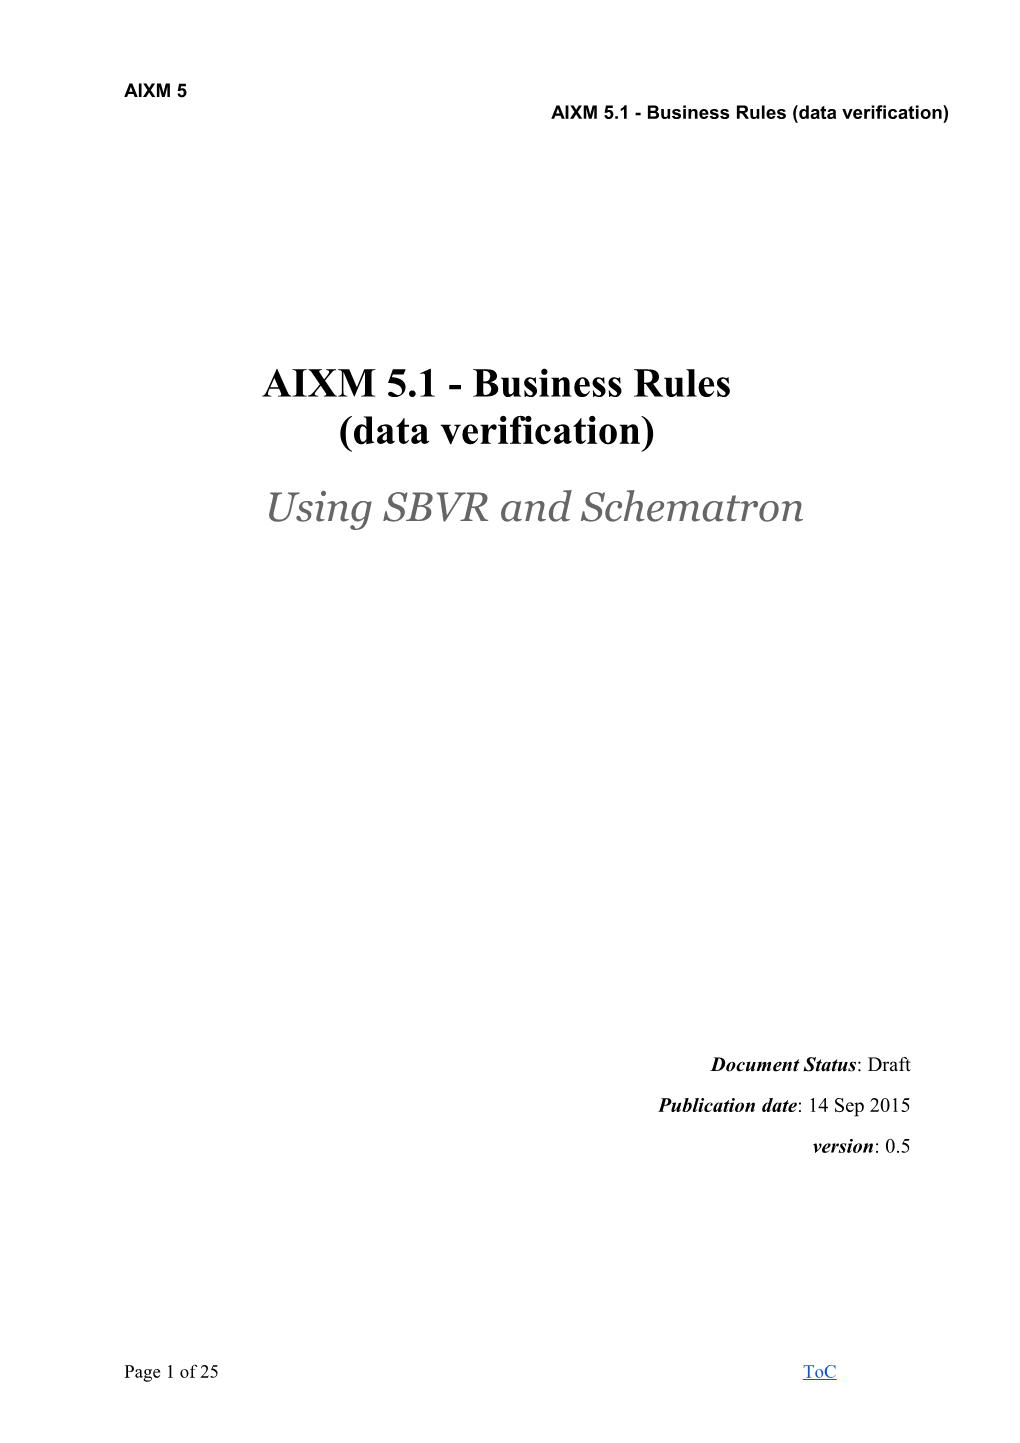 AIXM 5.1 - Business Rules (Data Verification)